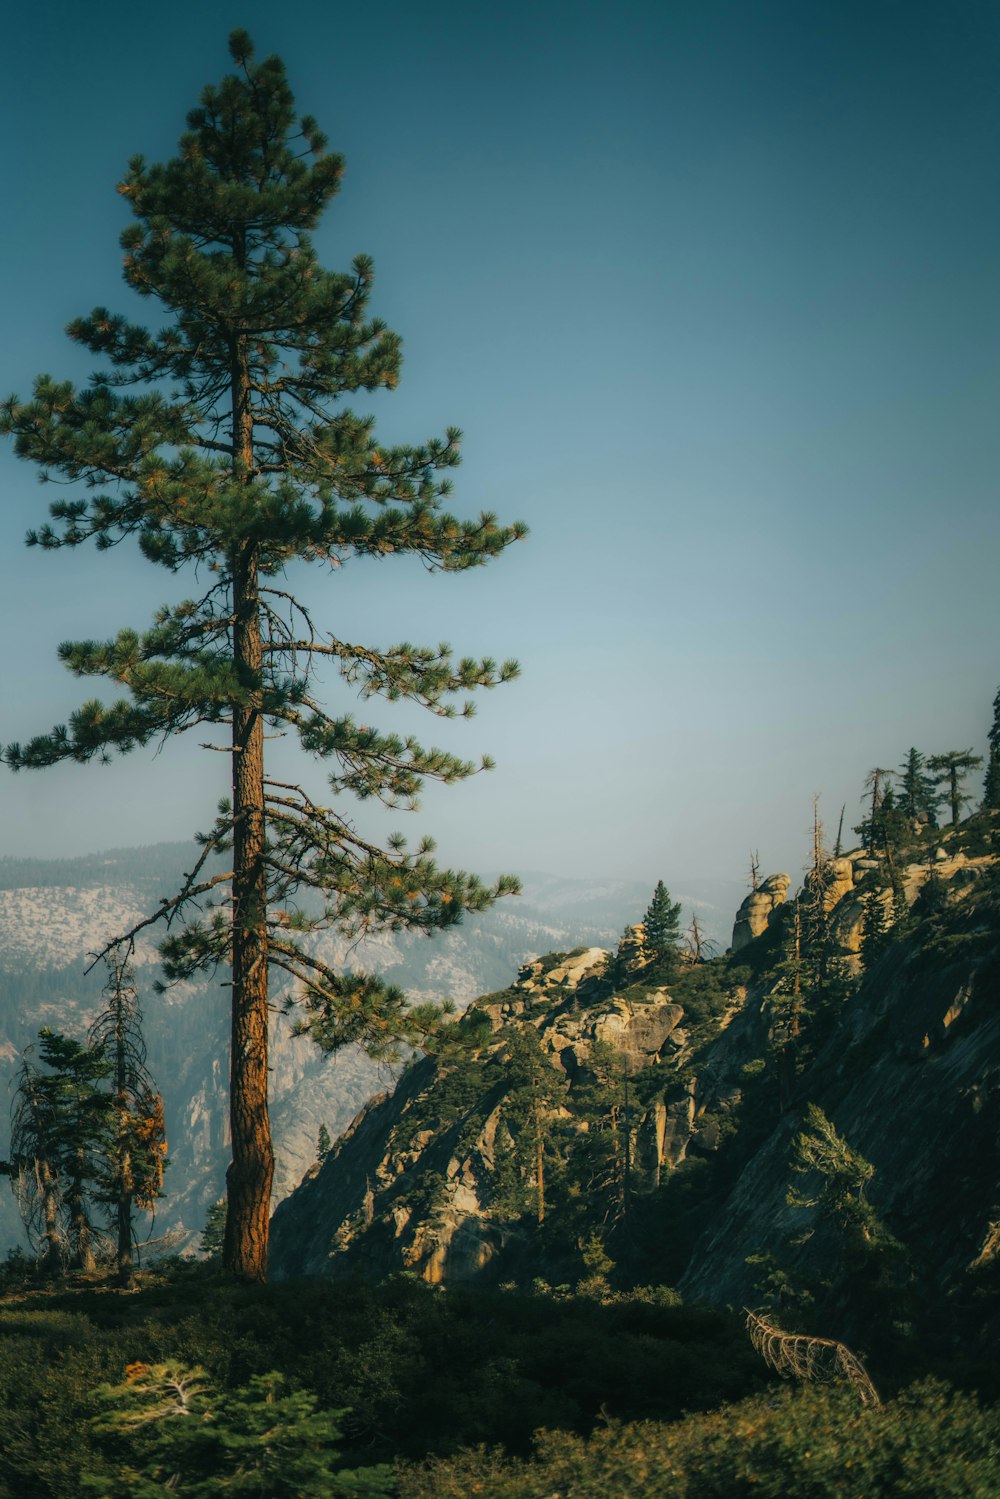 Un pino alto en la ladera de una montaña